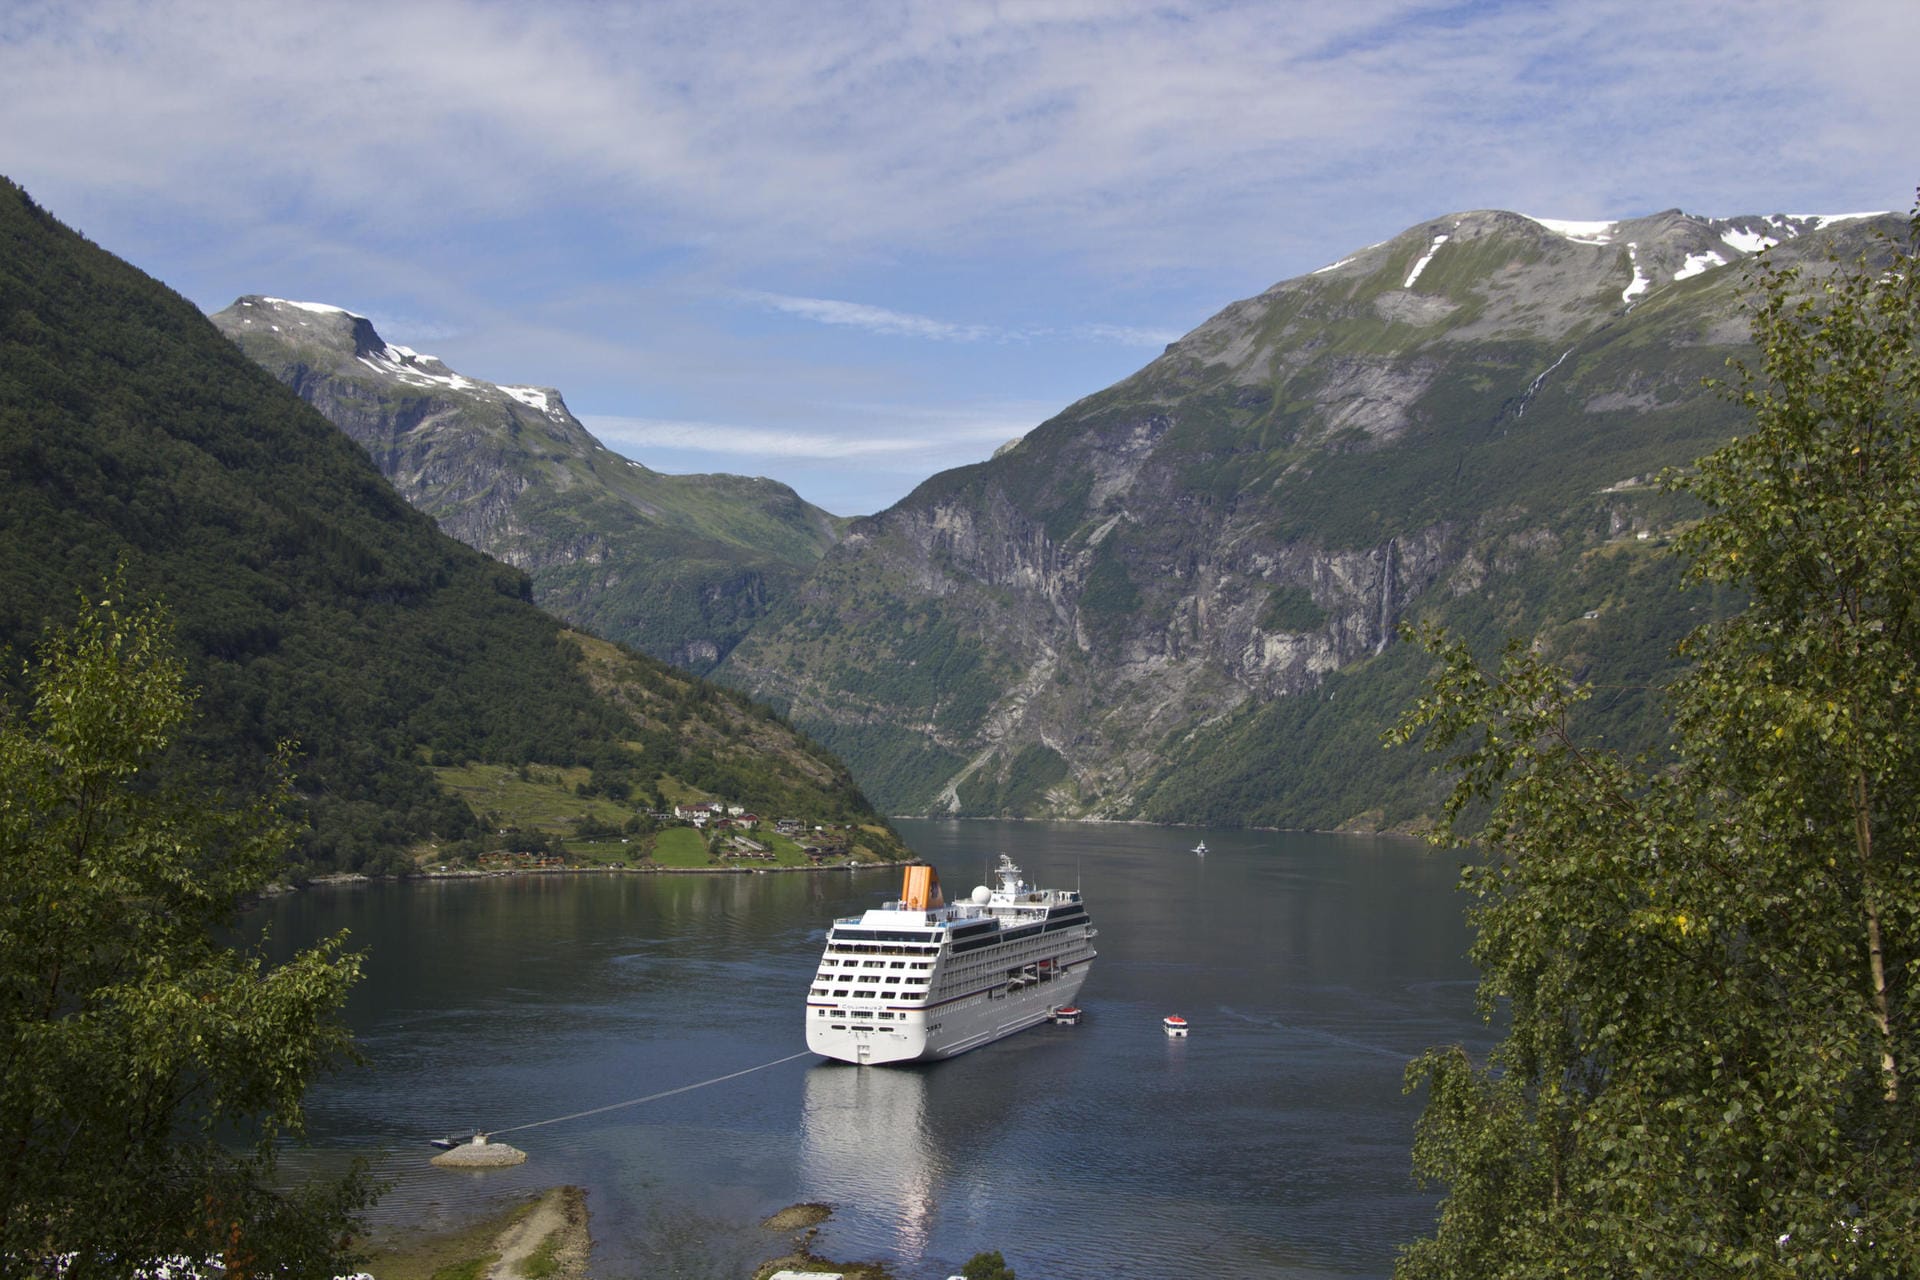 Der Geirangerfjord mit dem beschaulichen Ort Geiranger gehört zum Unesco-Welterbe und ist für Kreuzfahrer der Inbegriff ungezähmter, norwegischer Fjorde. Zusammen mit dem Nærøy-Fjord gilt Geiranger als schönste Fjord-Landschaft der Welt.